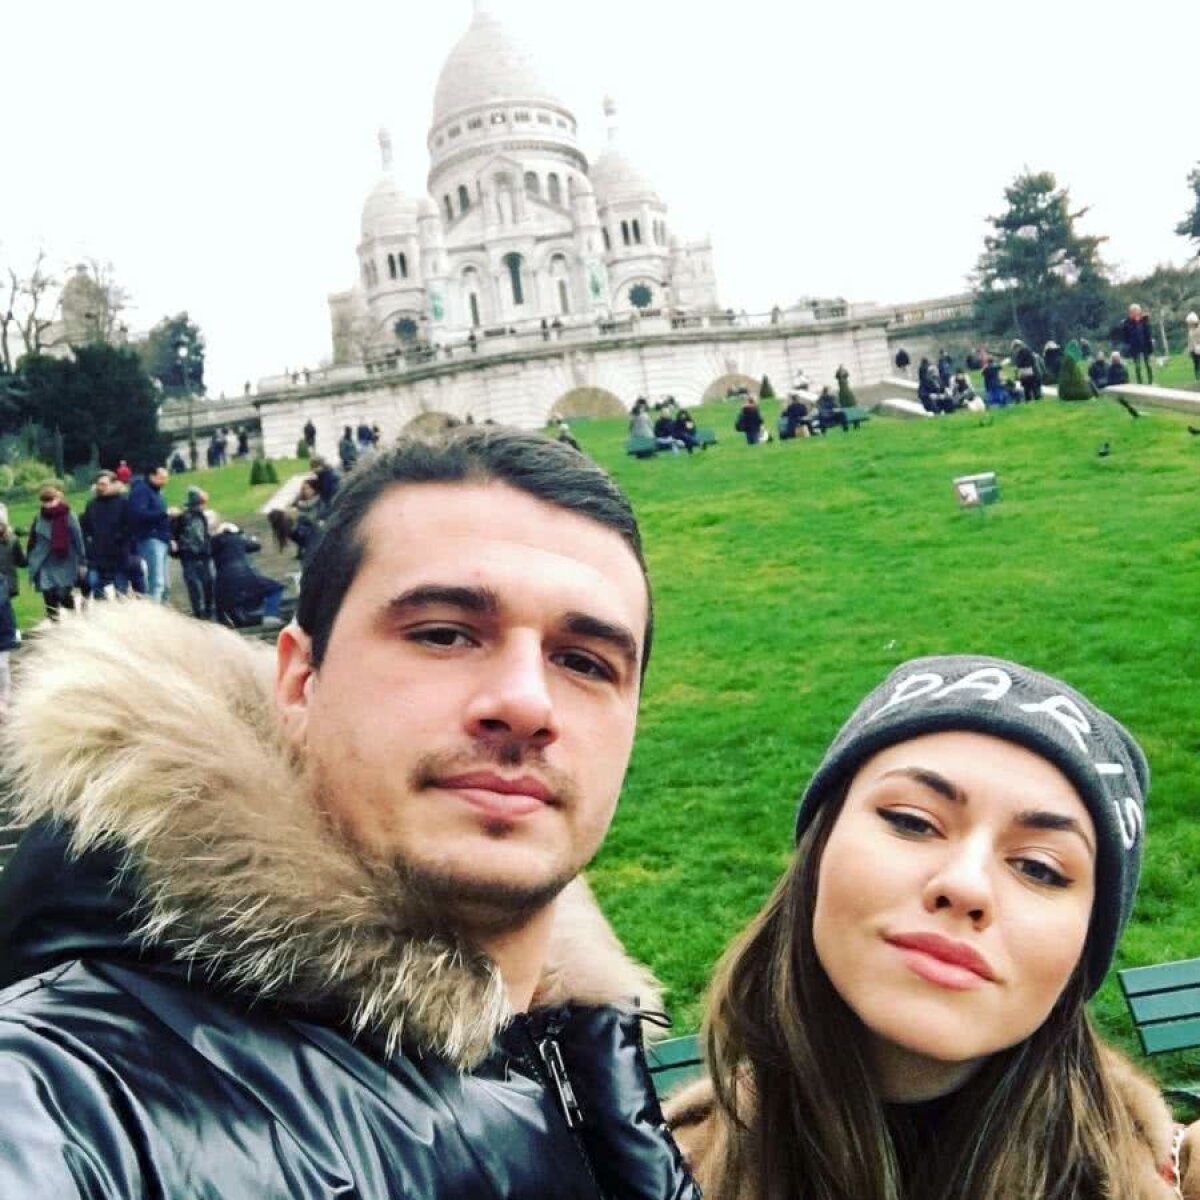 INSTASPORT // Plimbărețul Liviu Ganea » Imagini spectaculoase din vacanțe, alături de iubita lui